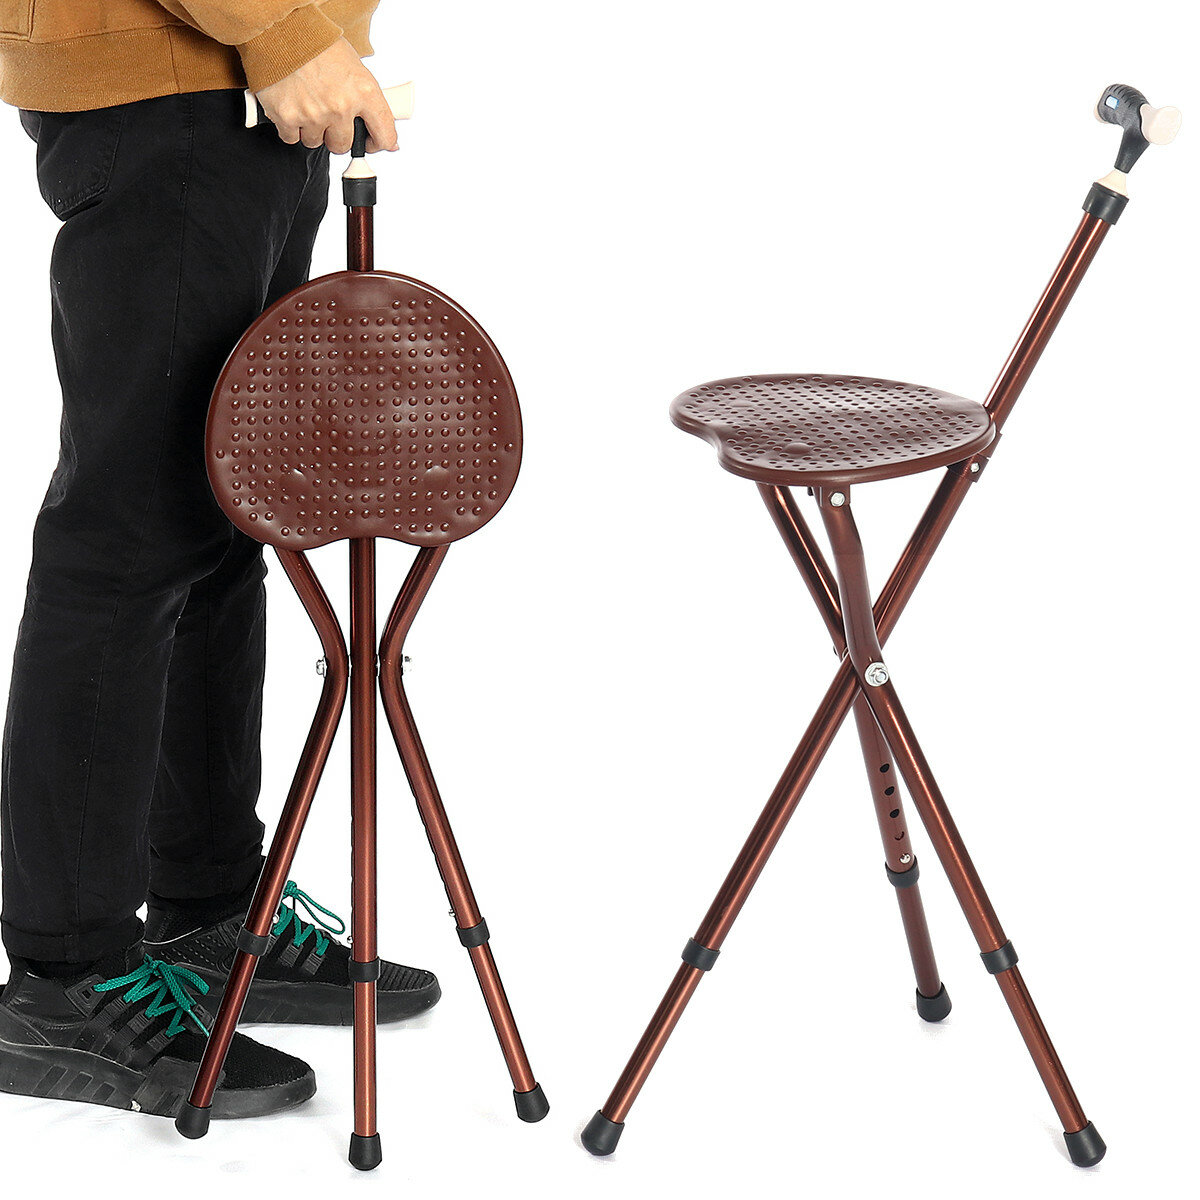 Sedia pieghevole regolabile in altezza con bastone con luce LED, sedia pieghevole per camminare per anziani.